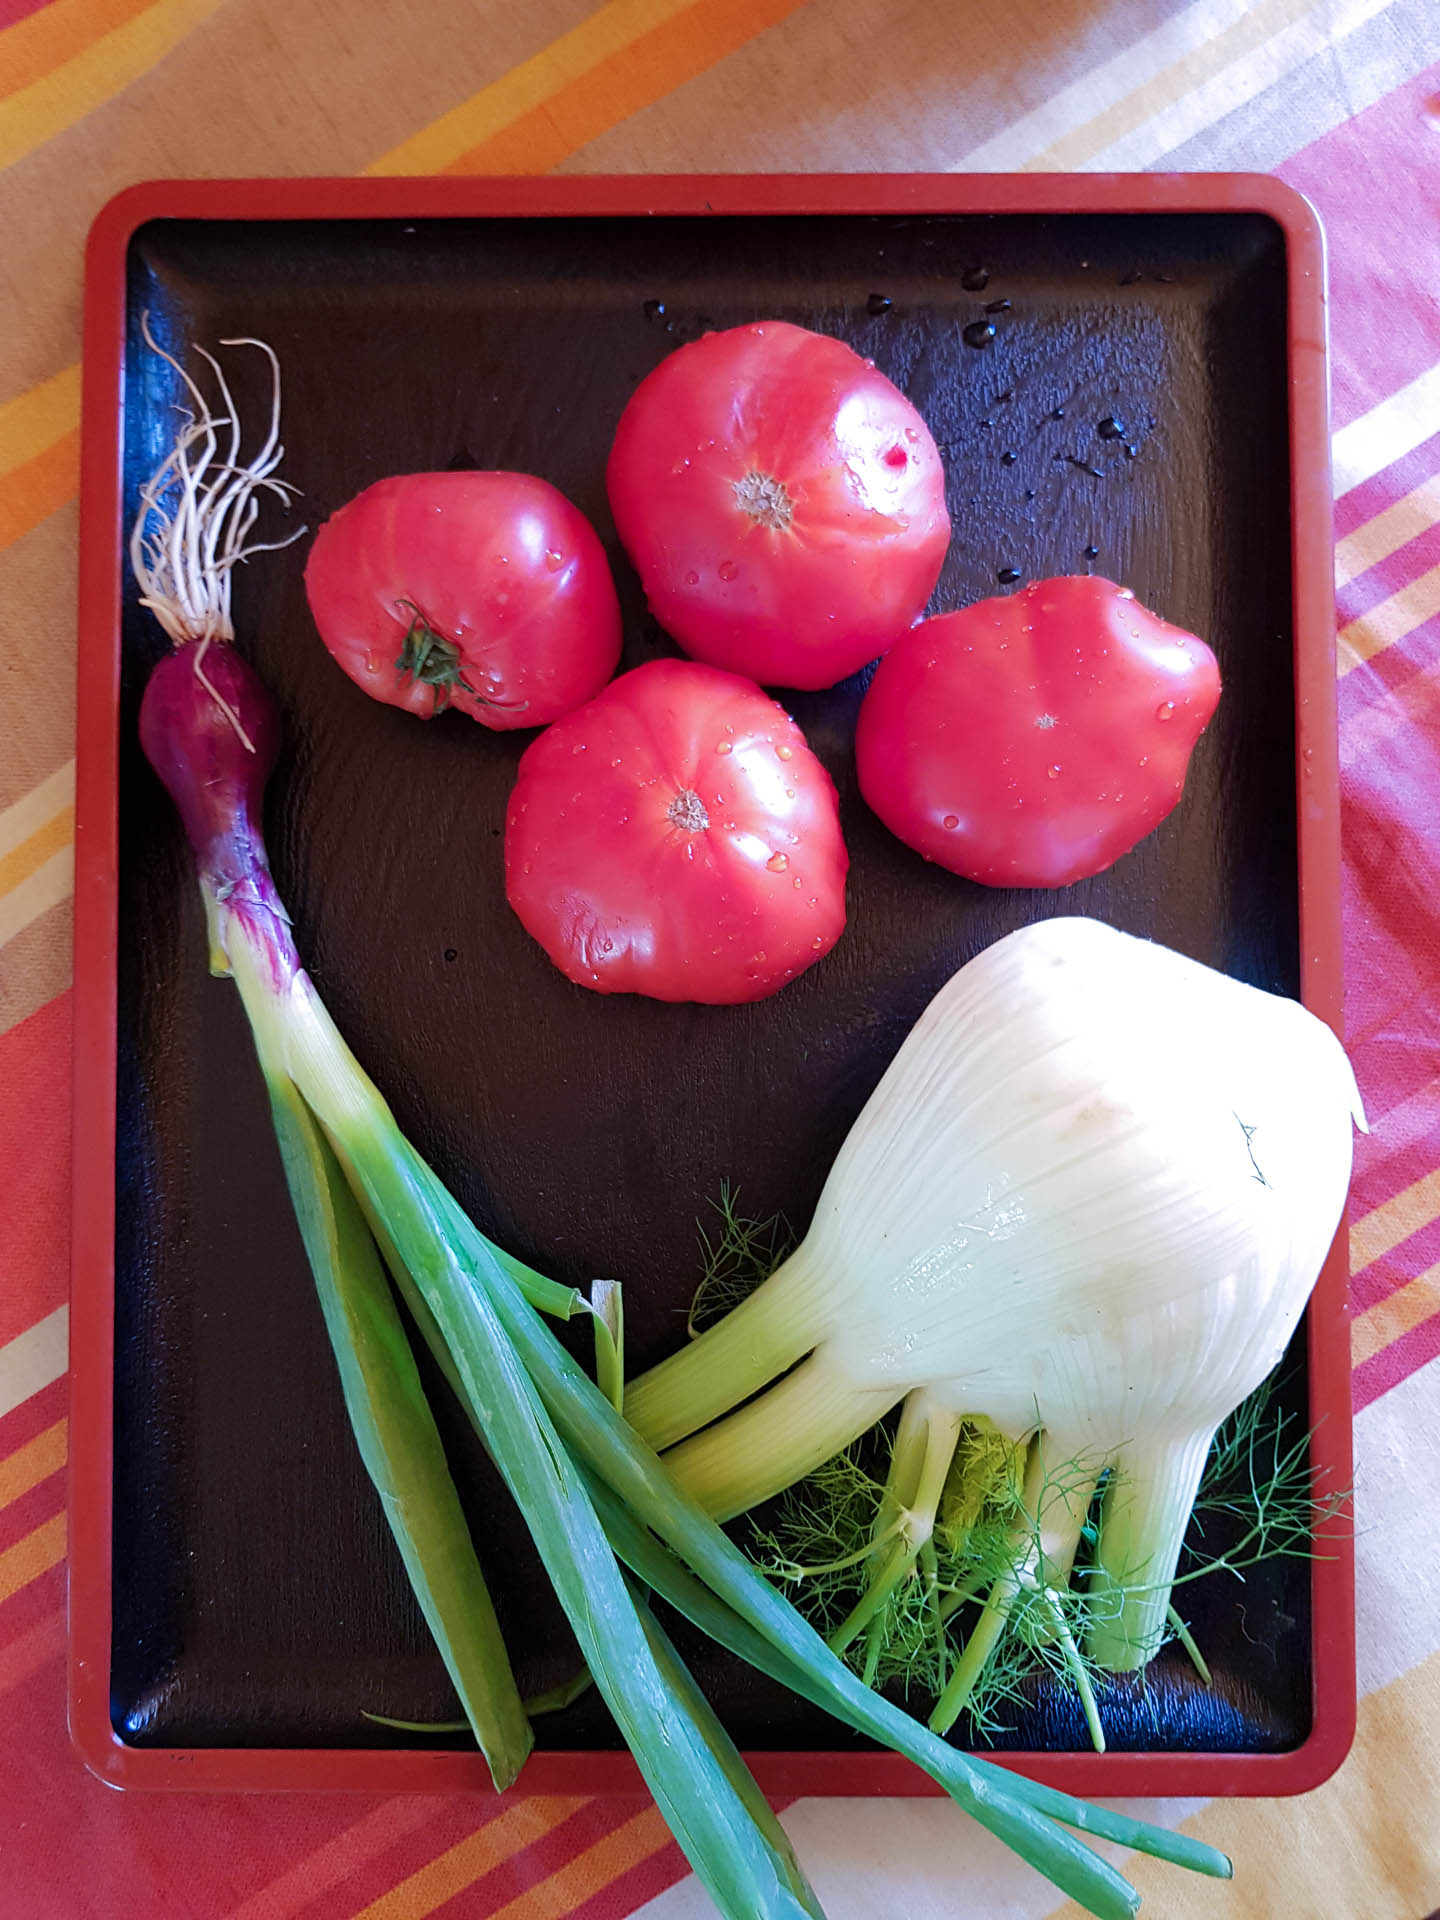 légumes de saison tomate, fenouil et oignon rouge